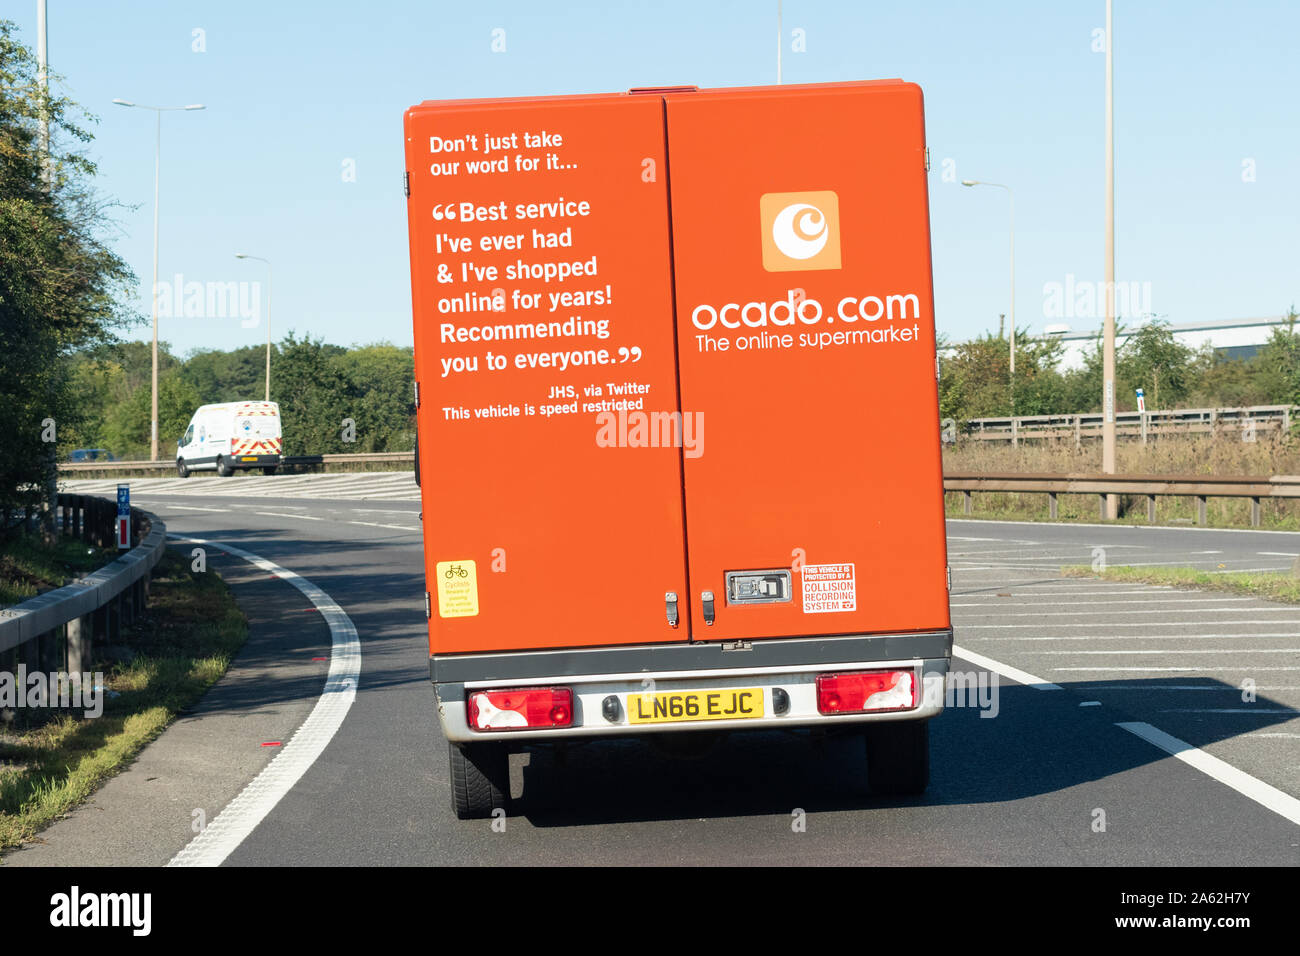 Ocado van livraison avec twitter recommandation client affiché à l'arrière - UK Banque D'Images